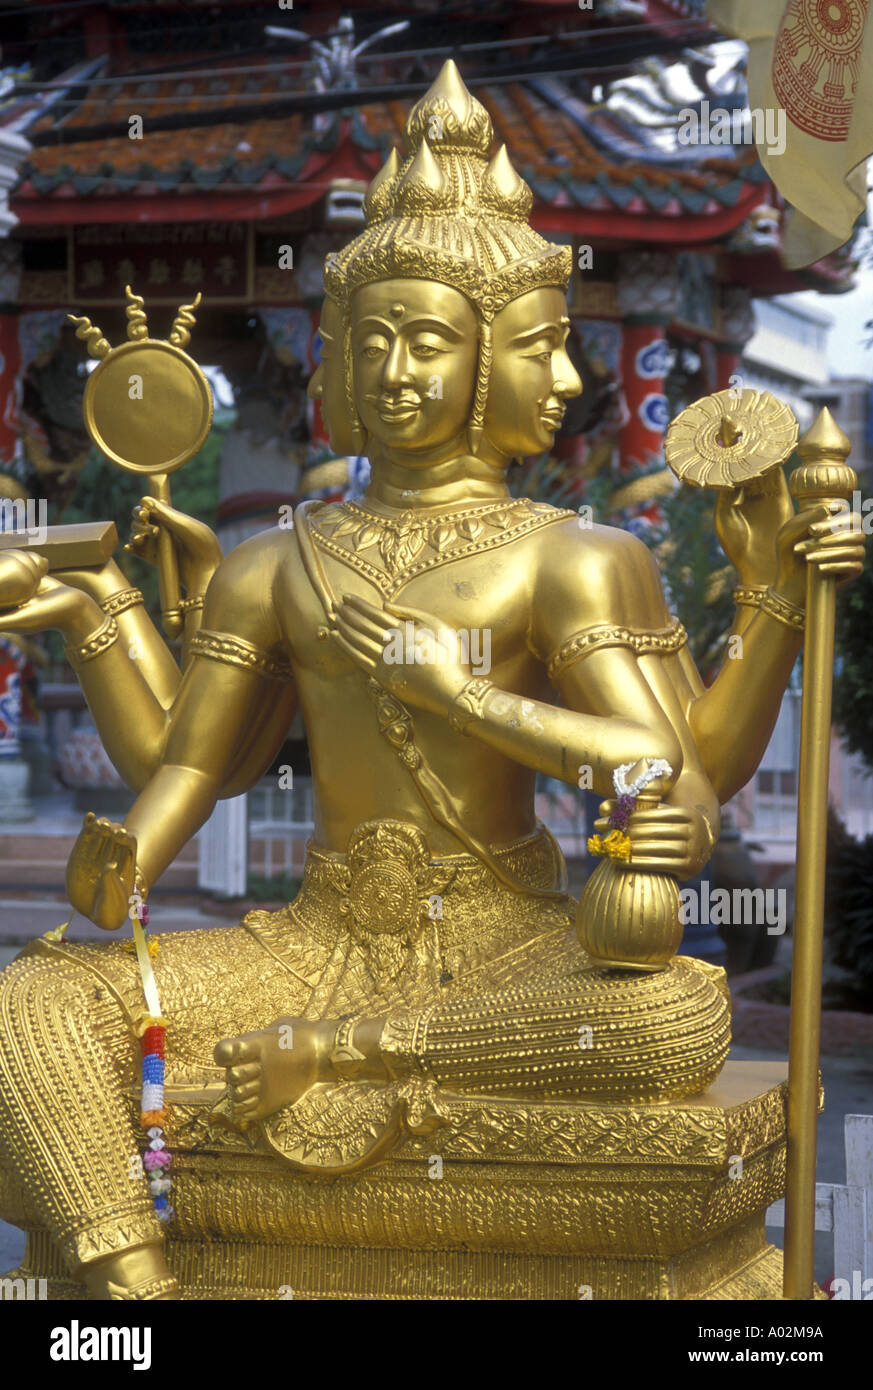 Hinduismus eine Trimurti-Statue, die Götter Brahma, Shiva und Vishnu darstellt Stockfoto